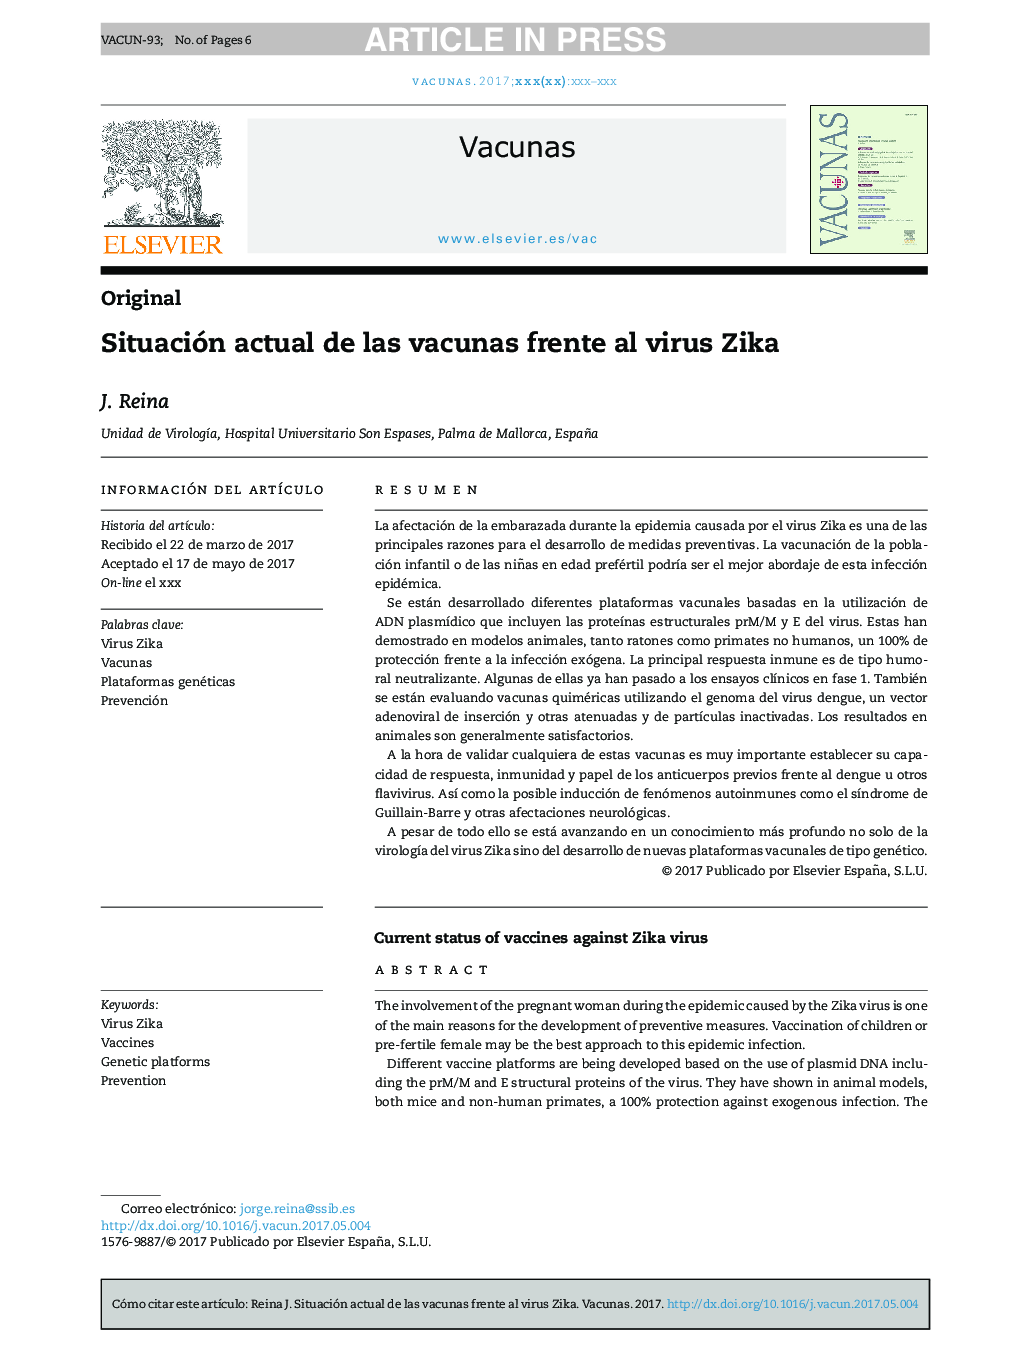 وضعیت فعلی واکسن در برابر ویروس زیکا 